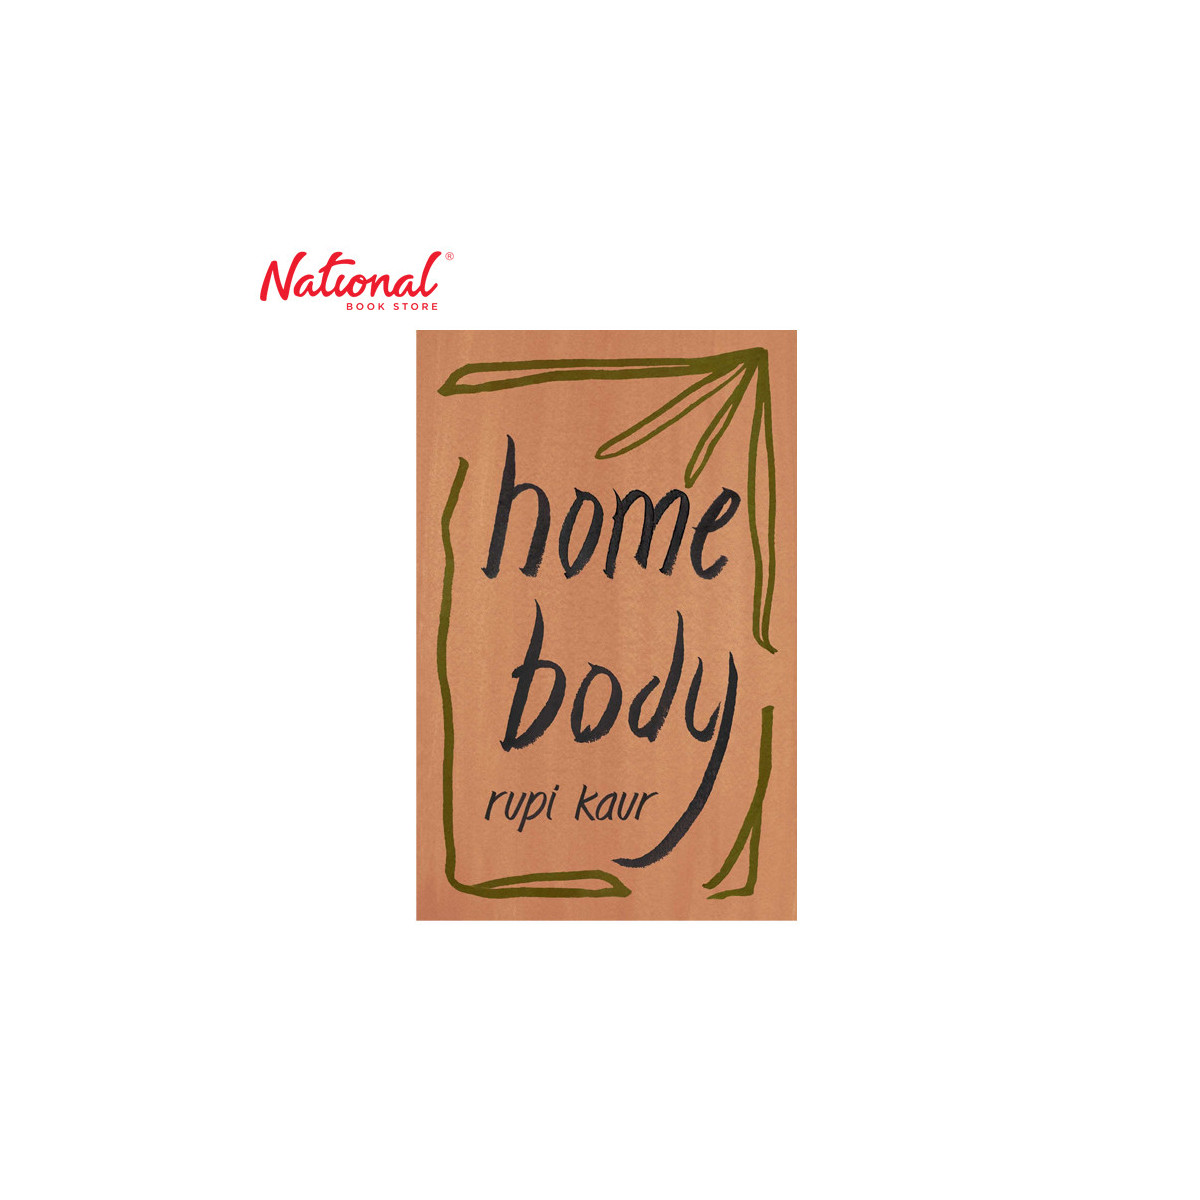 Home Body by Rupi Kaur Trade Paperback